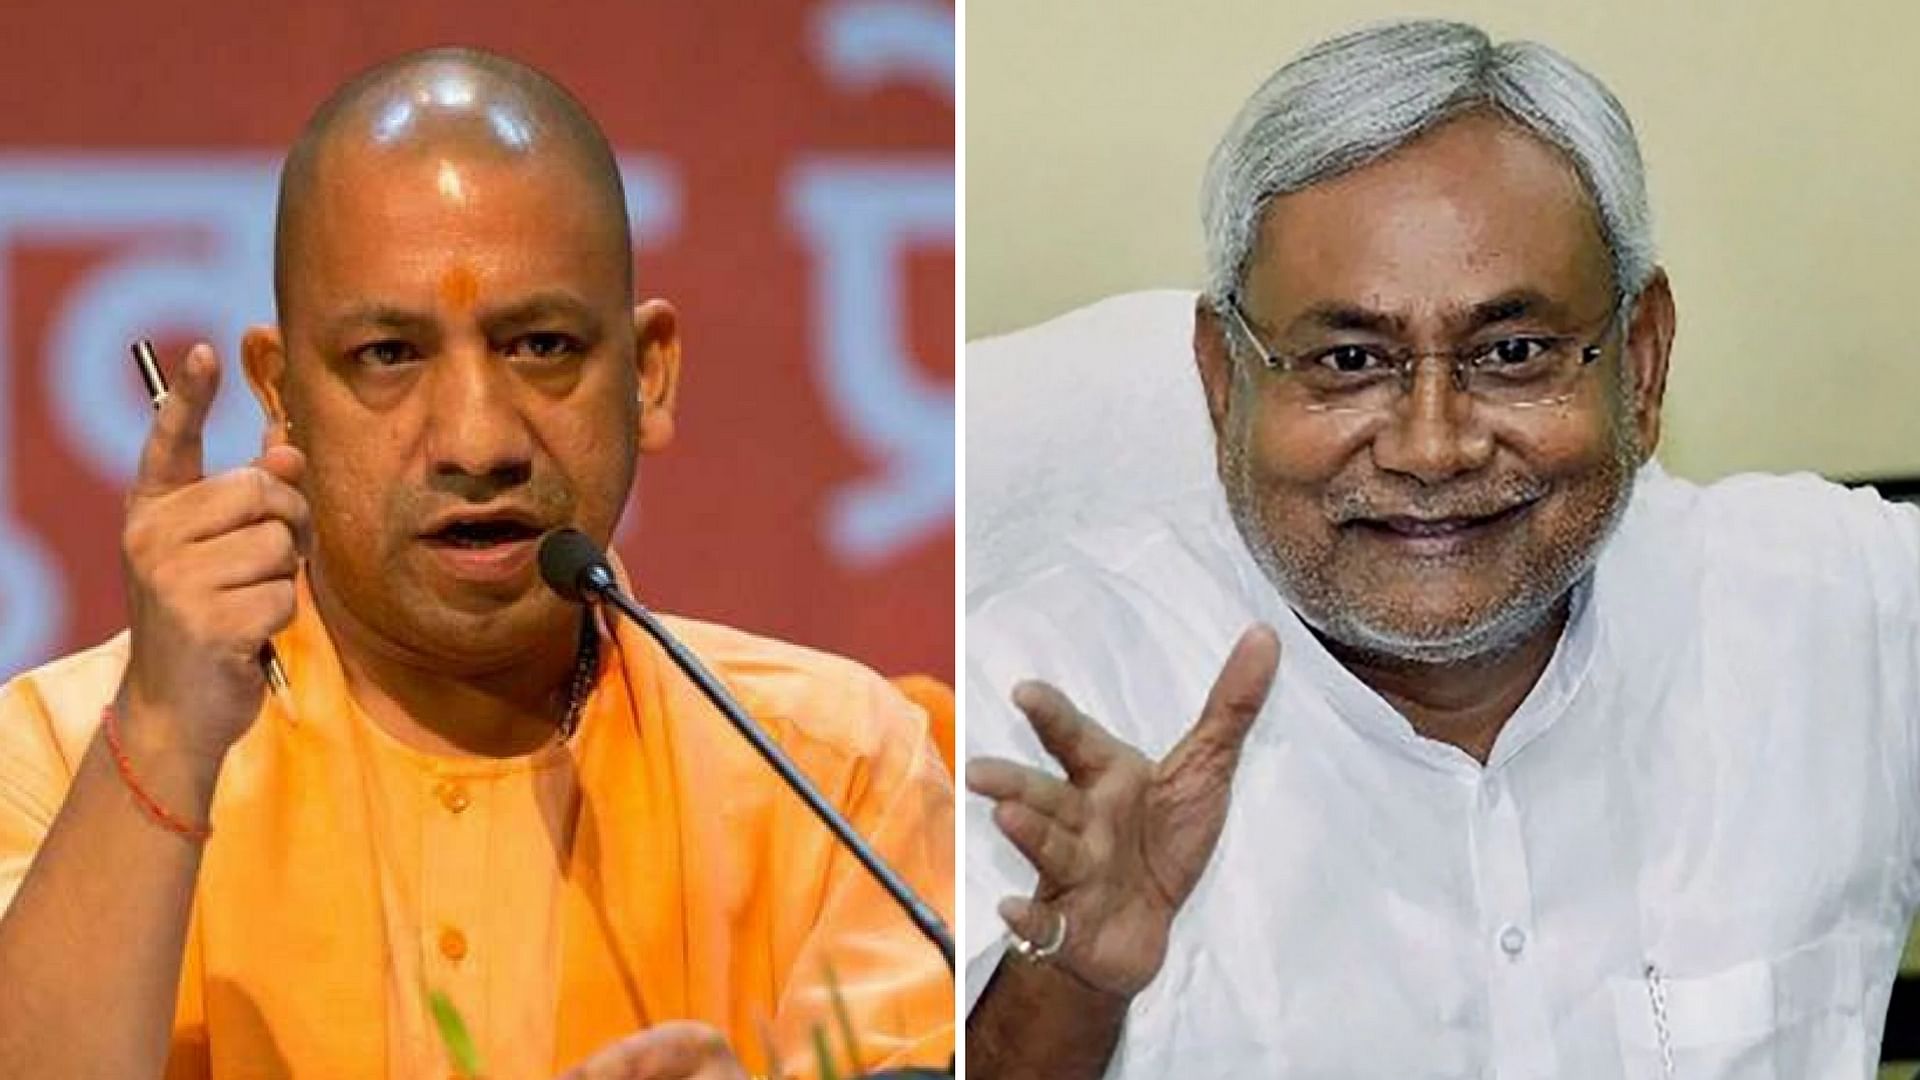  UP CM Yogi Adityanath (left) and Bihar CM Nitish Kumar (right).